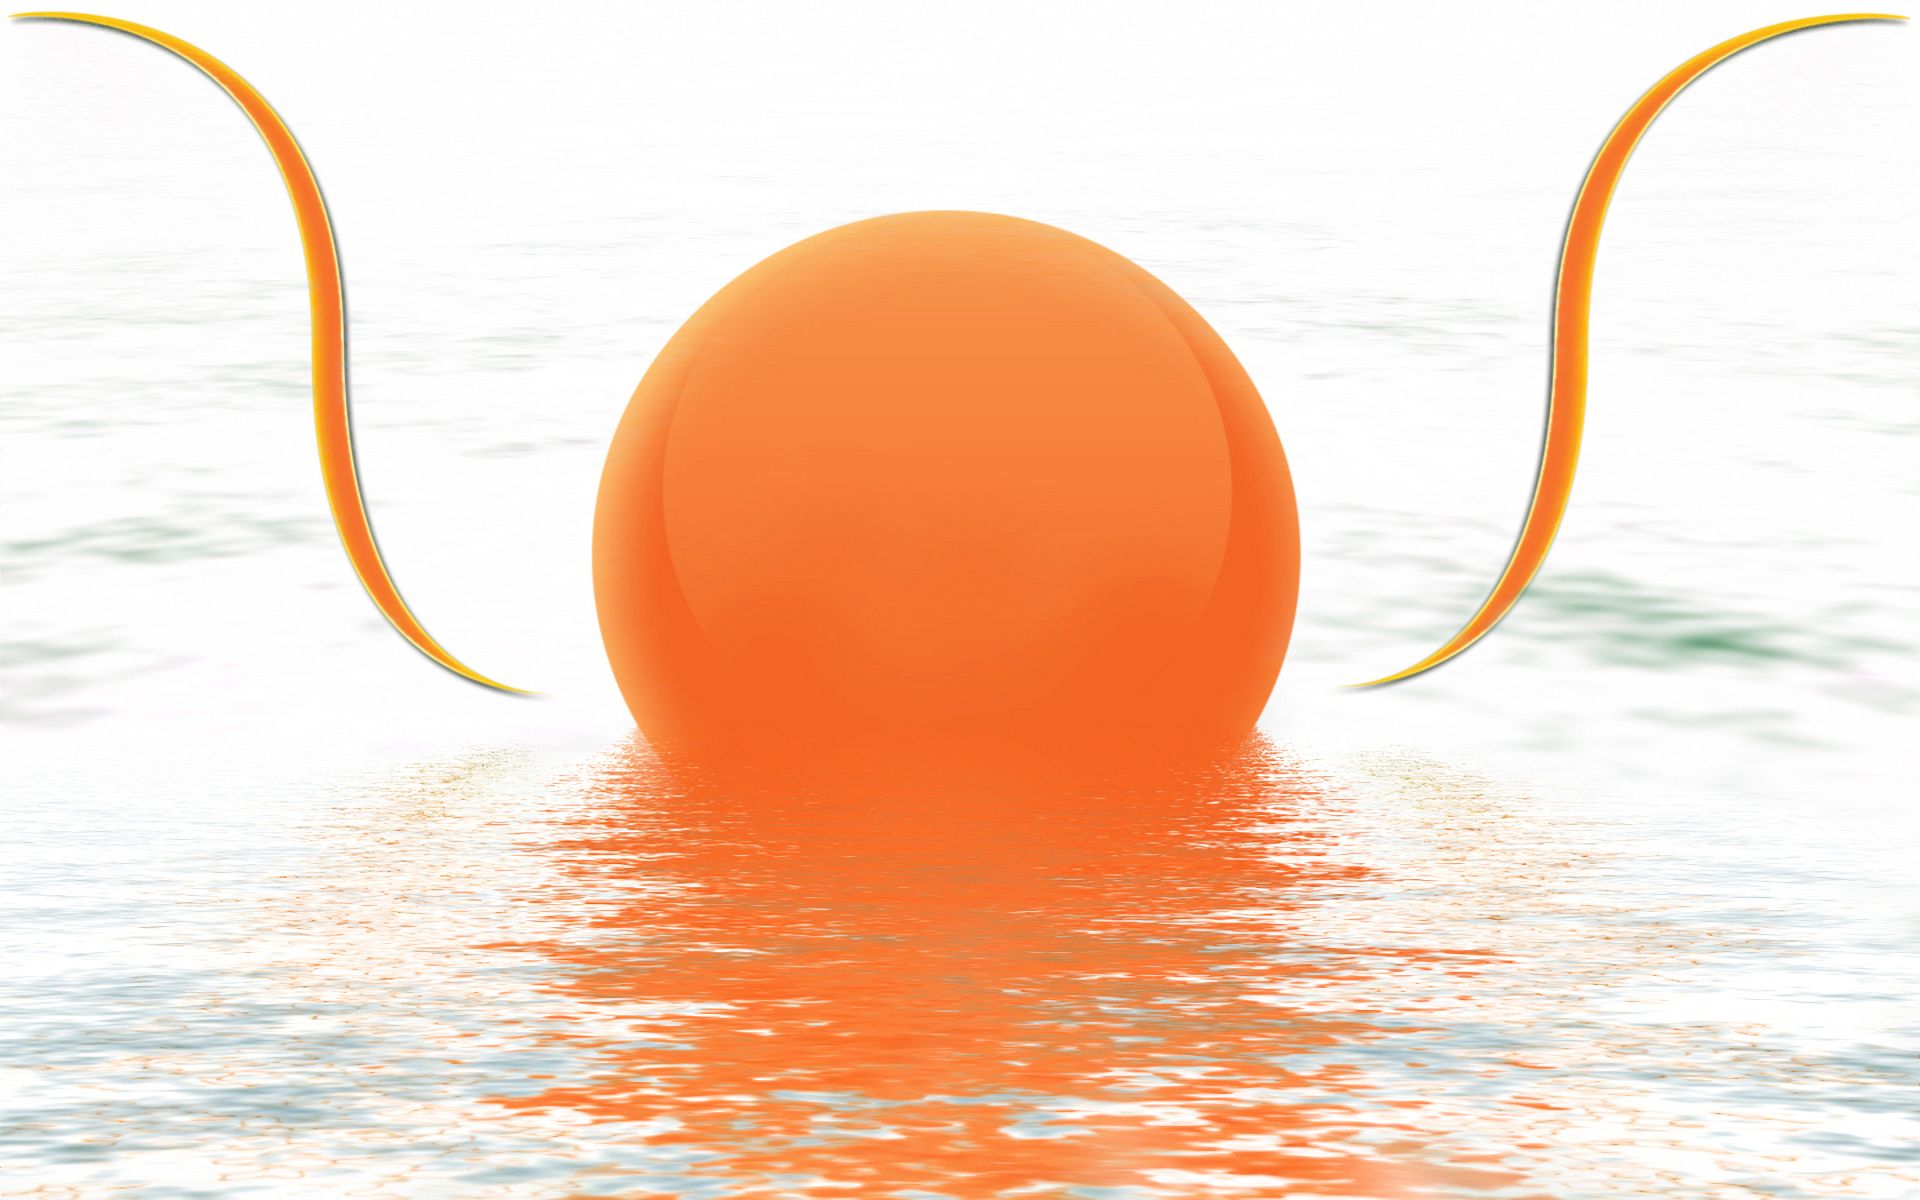 Скачать обои бесплатно Вода, 3D, Графика, Мяч, Абстрактные, Оранжевый Цвет) картинка на рабочий стол ПК